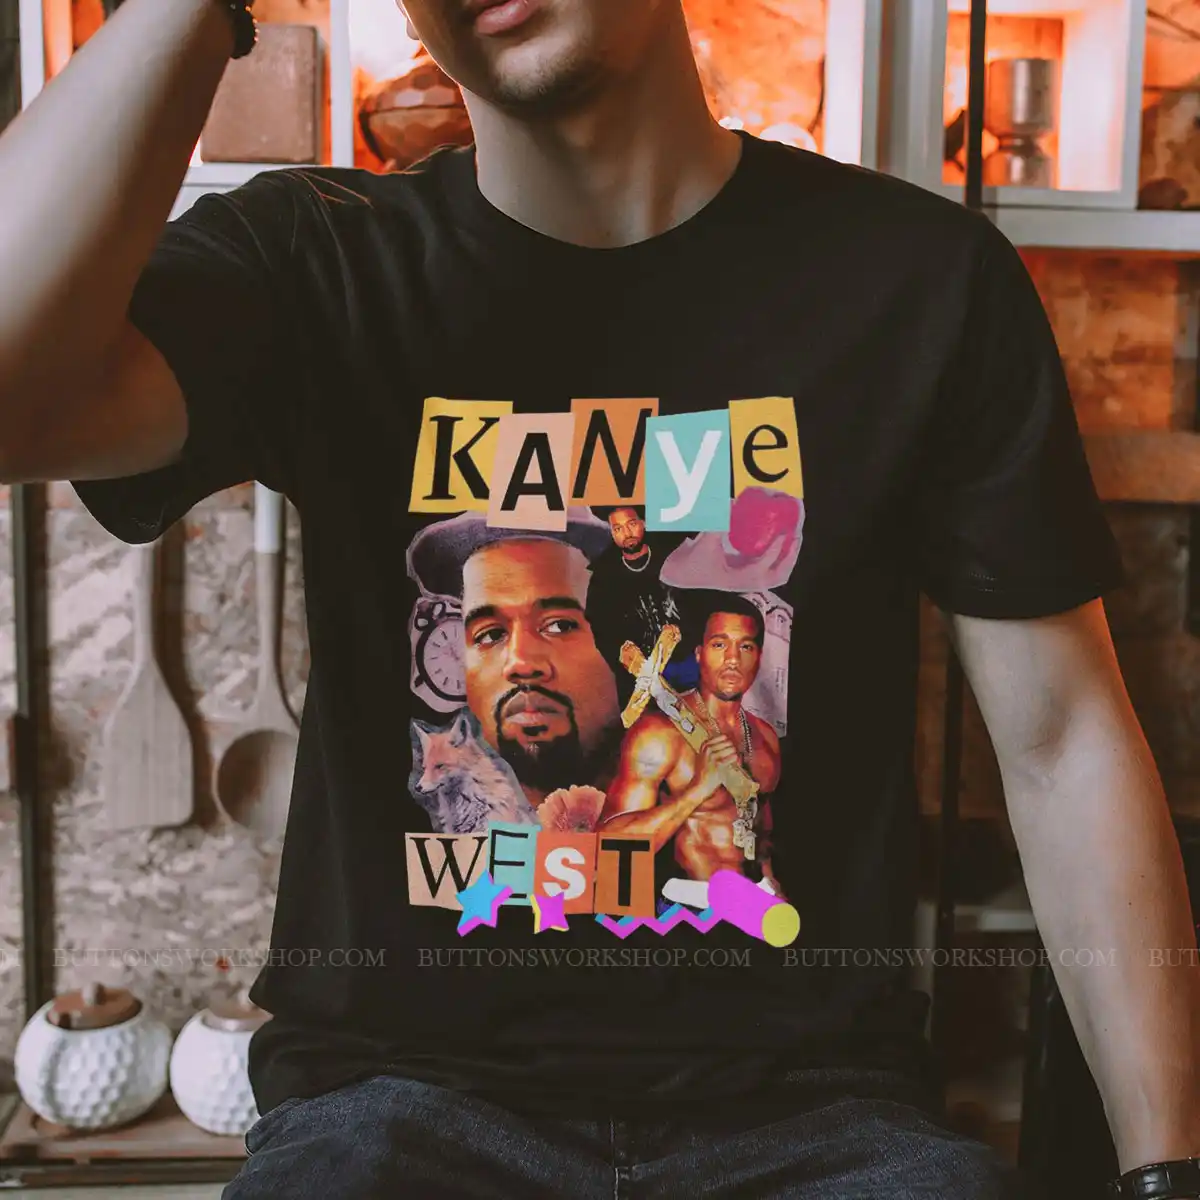 Kanye West Shirt Unisex Tshirt